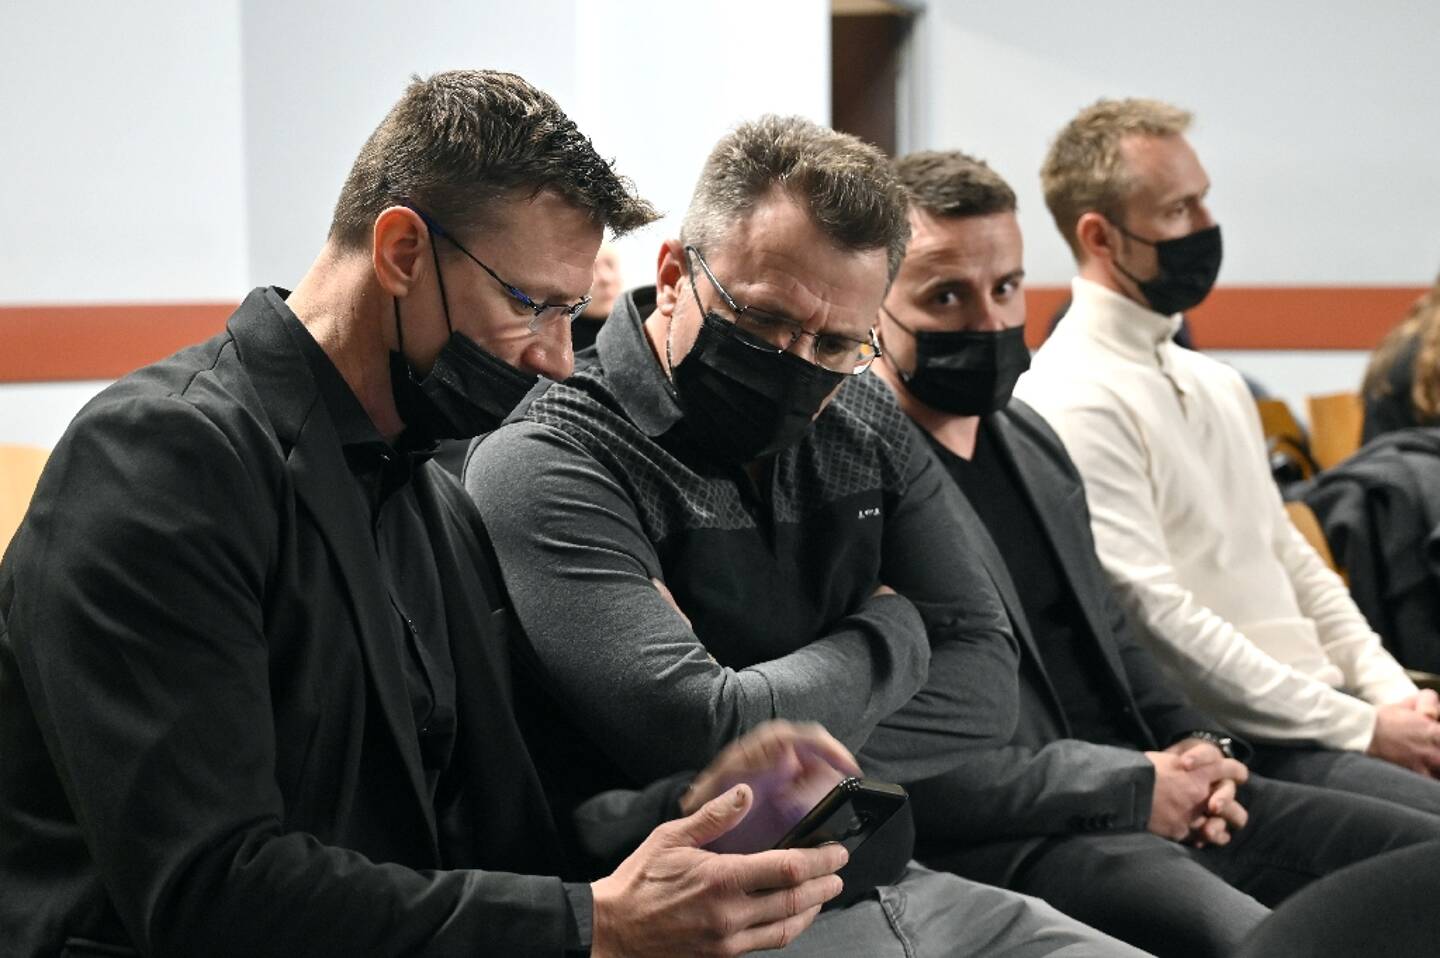 L'ancien footballeur international Tony Vairelles (à gauche) et ses frères Fabrice, Giovan et Jimmy (de gauche à droite) attendent au tribunal correctionnel de Nancy le 21 mars 2022, avant leur procès pour "violences aggravées".